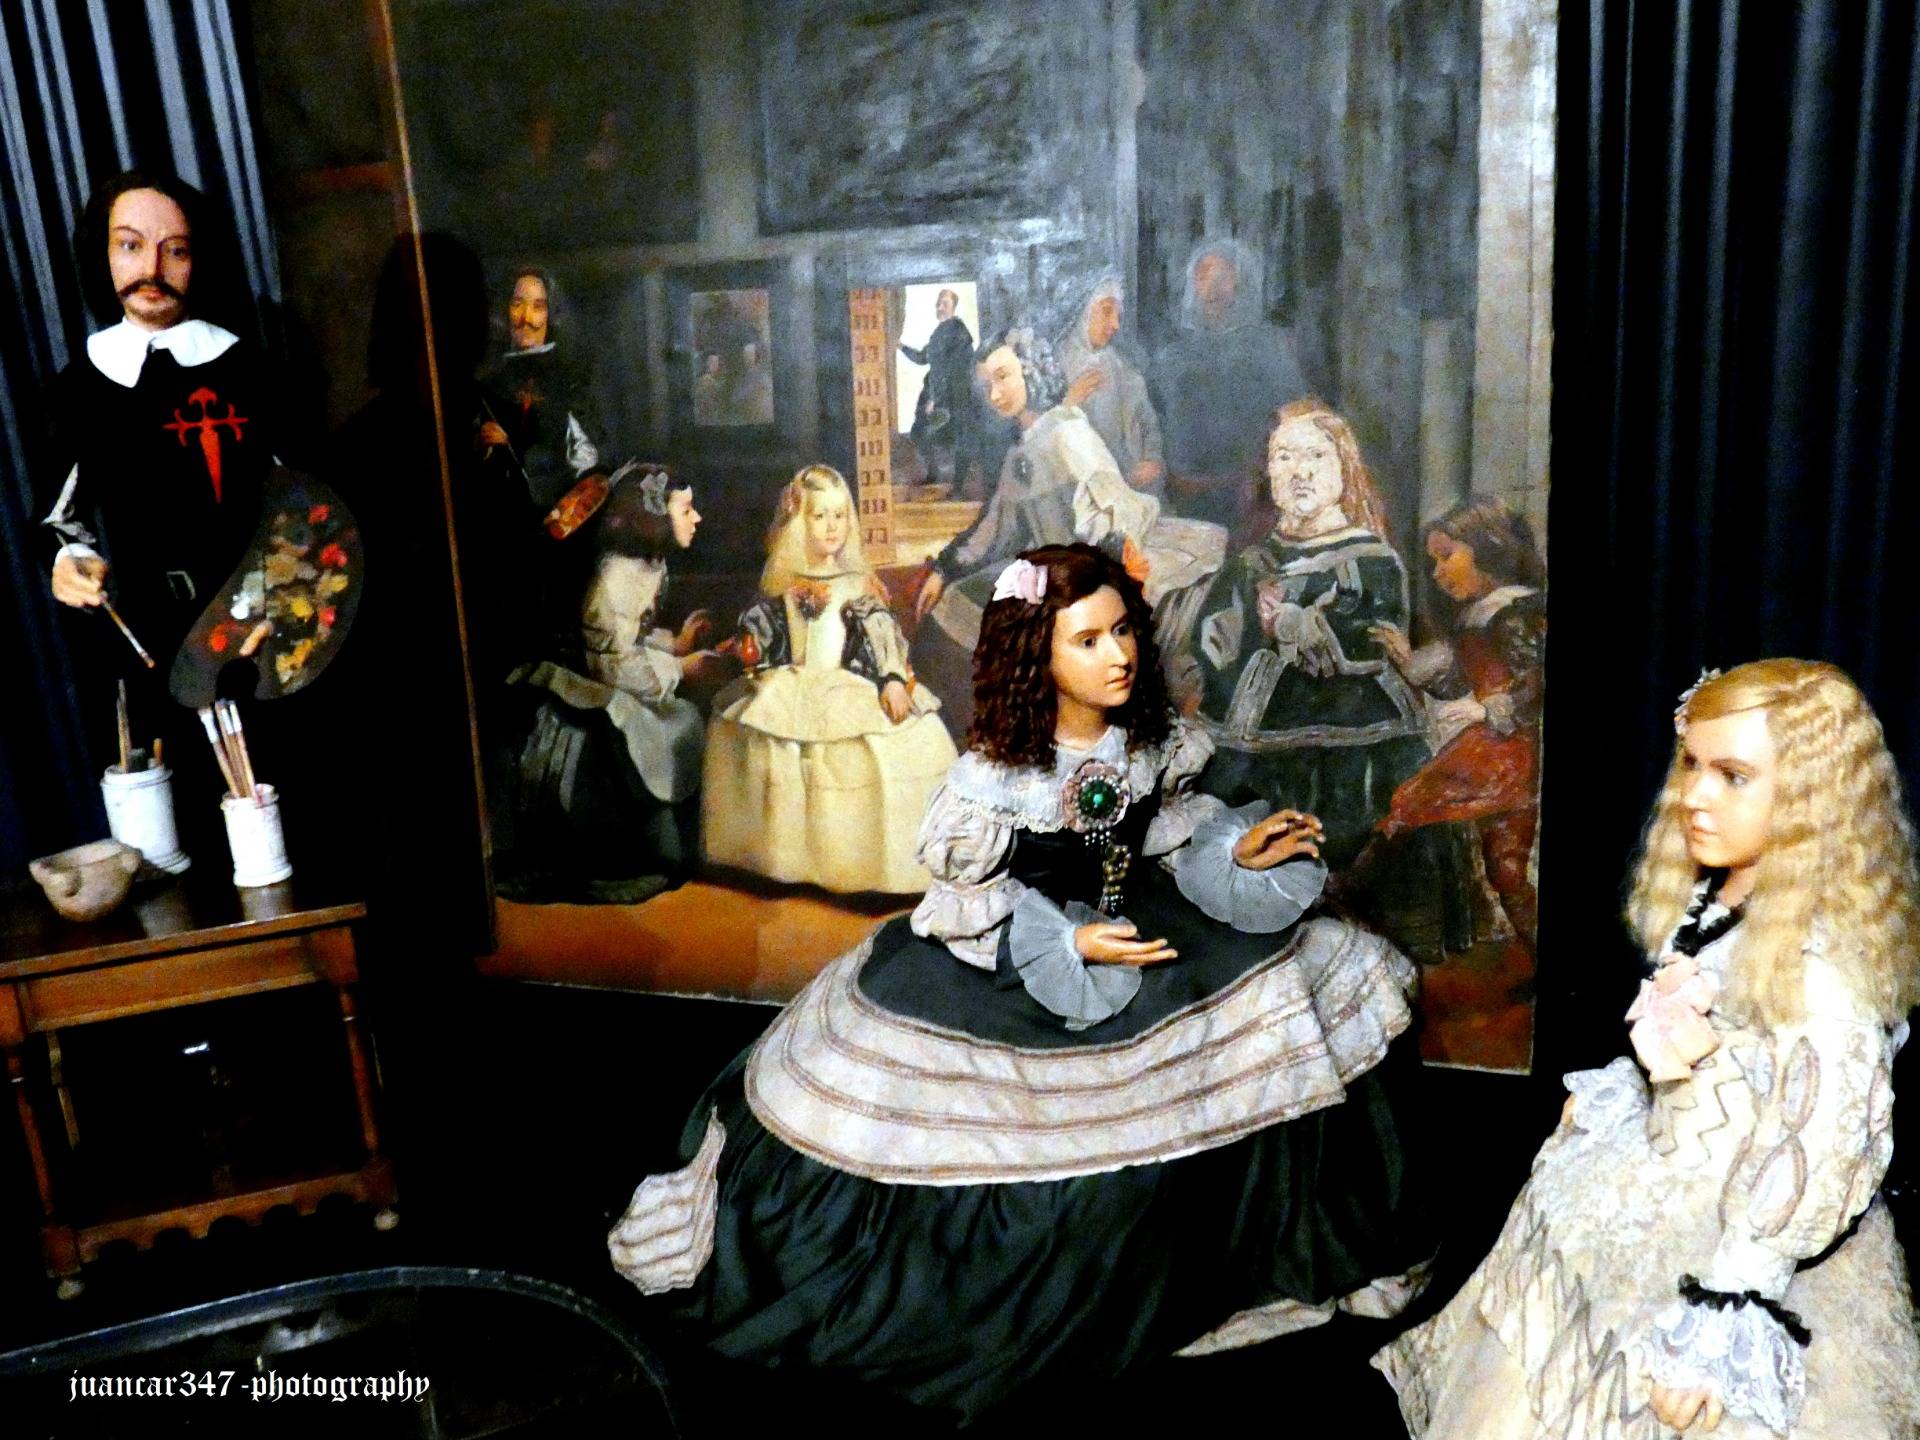 Velazquez and Las Meninas